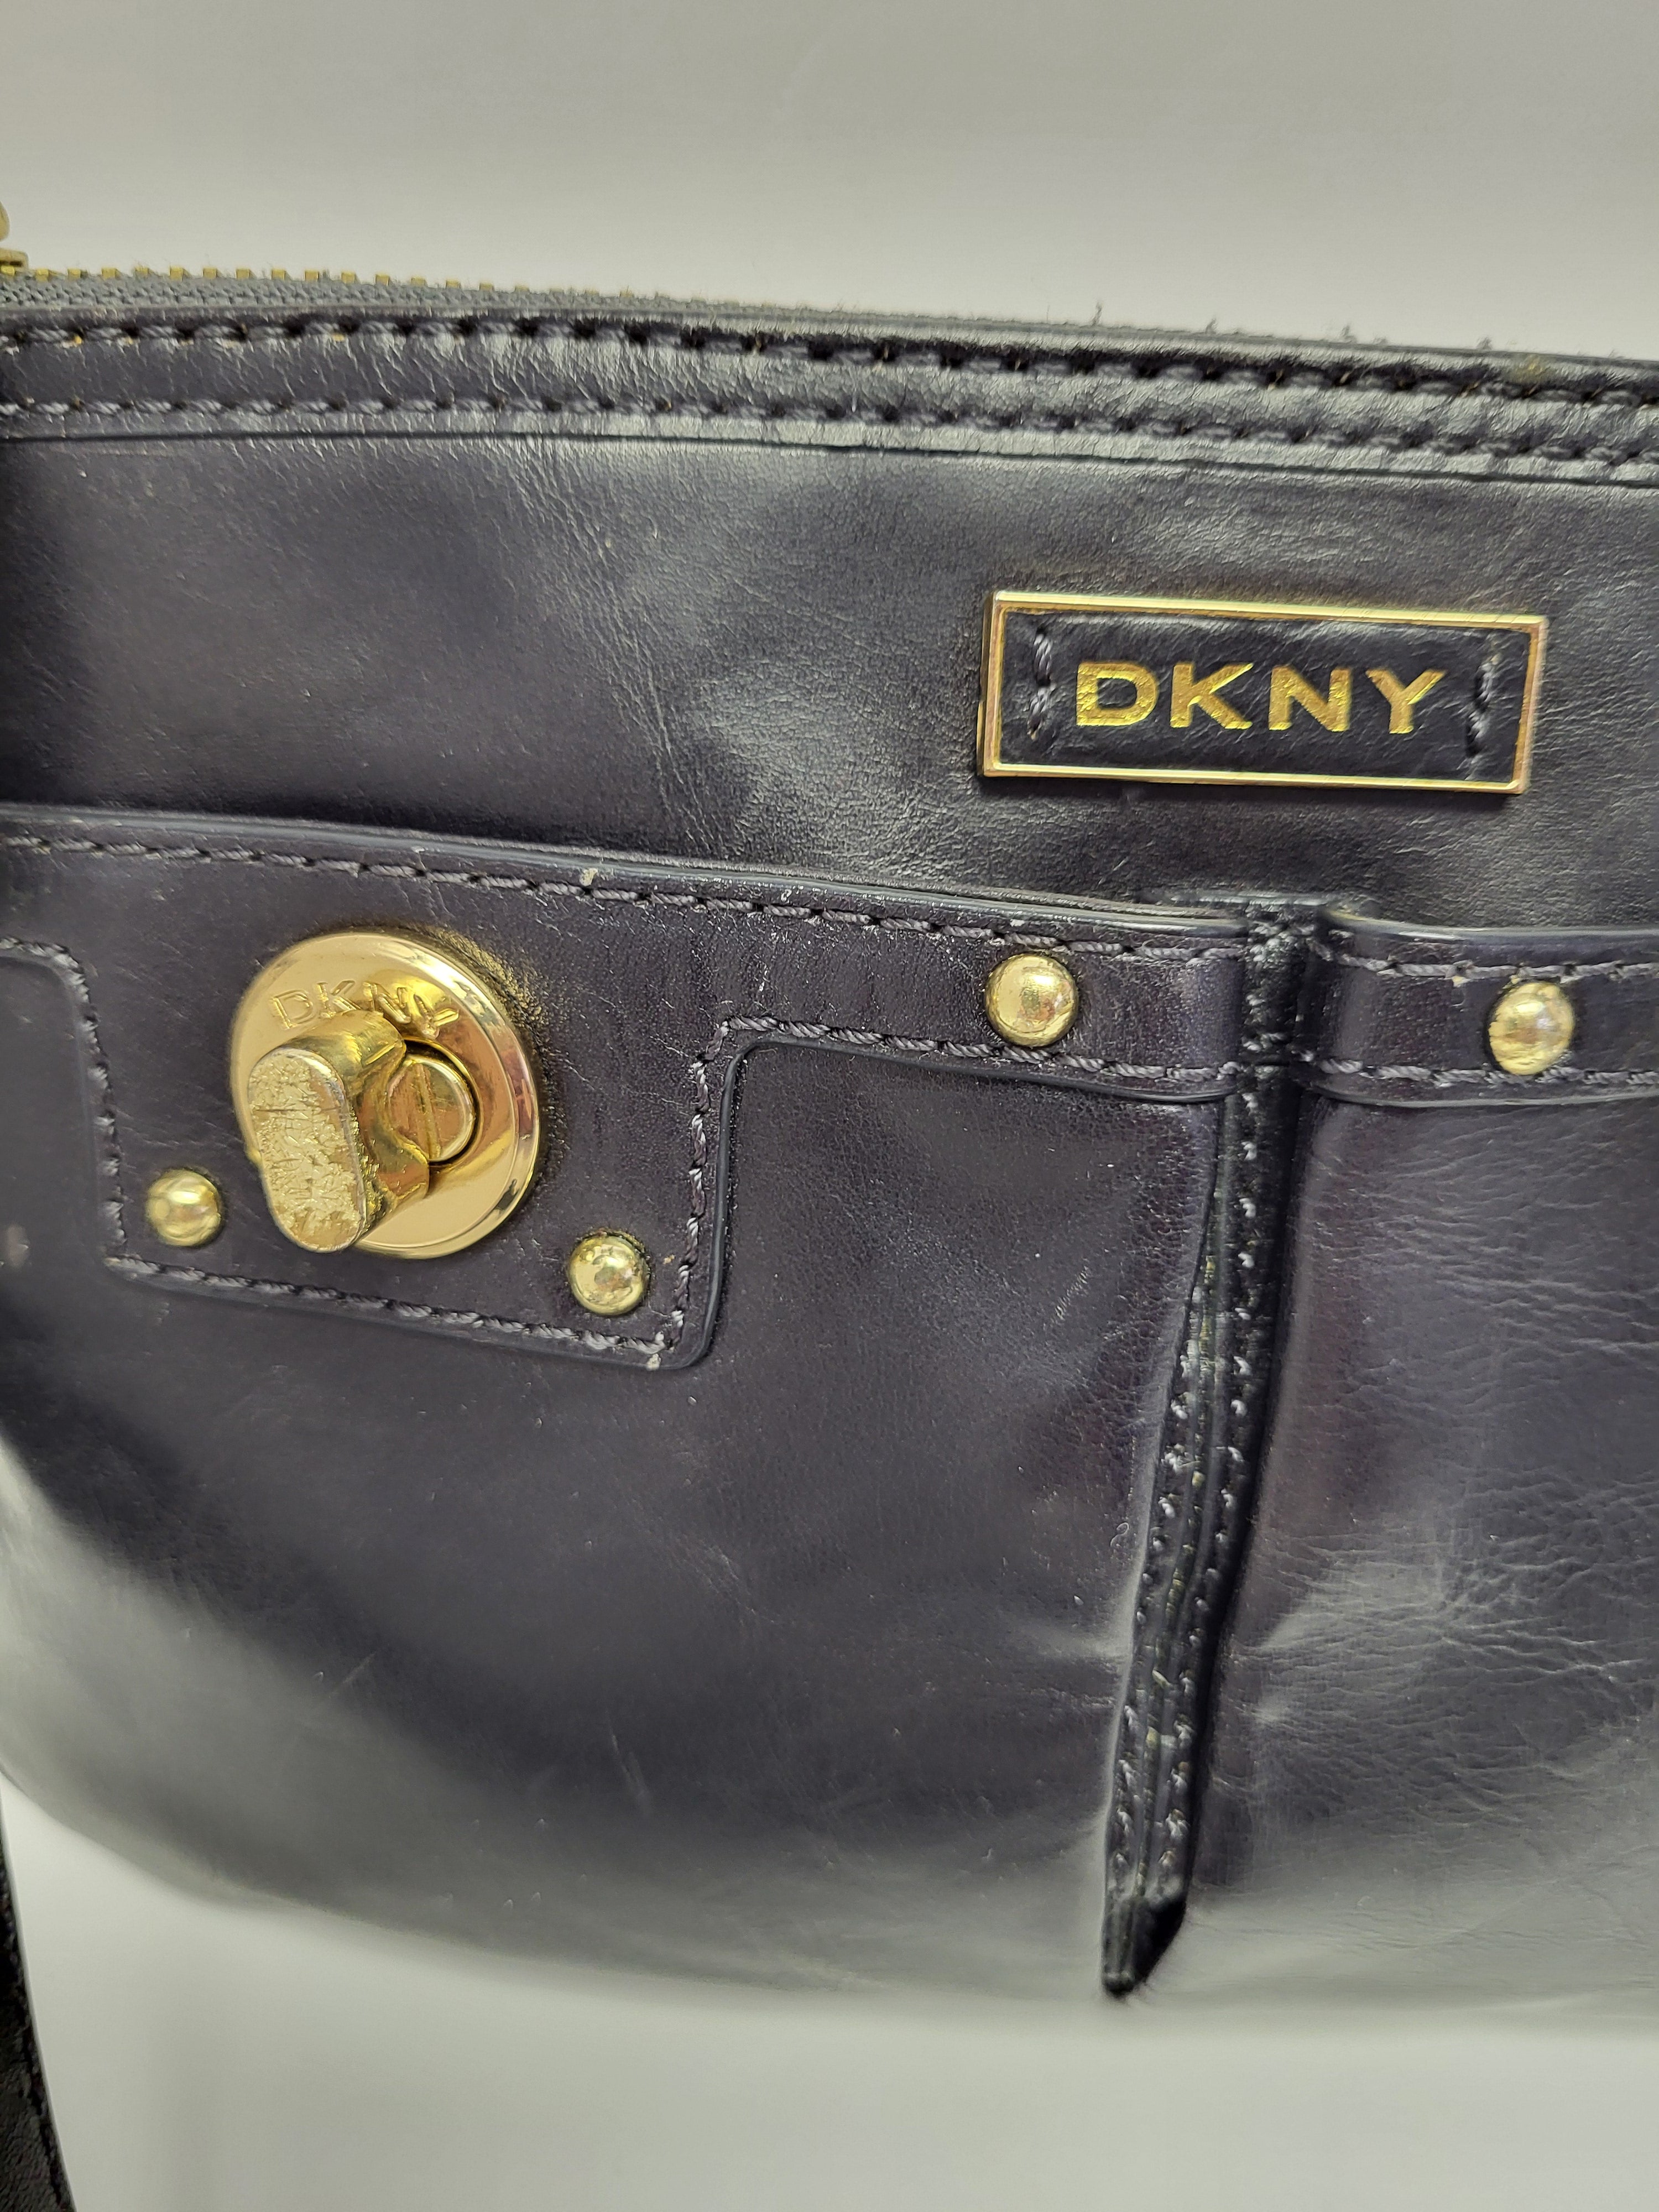 DKNY Black Leather Shoulder/Crossbody Bag